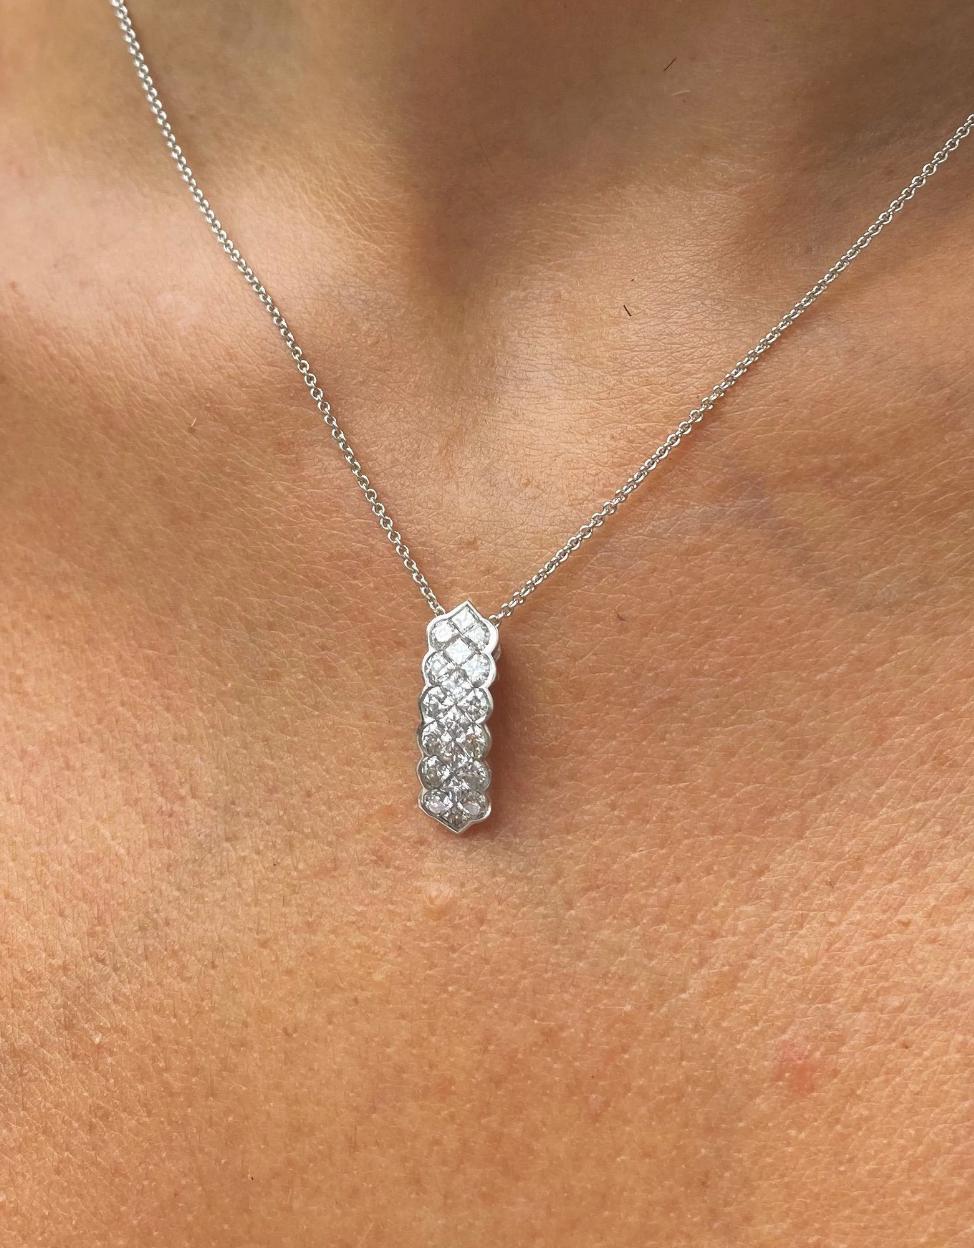 1.5 Carat Princess Cut Created Diamond Pendant Necklace - Silver Jewellery  UK